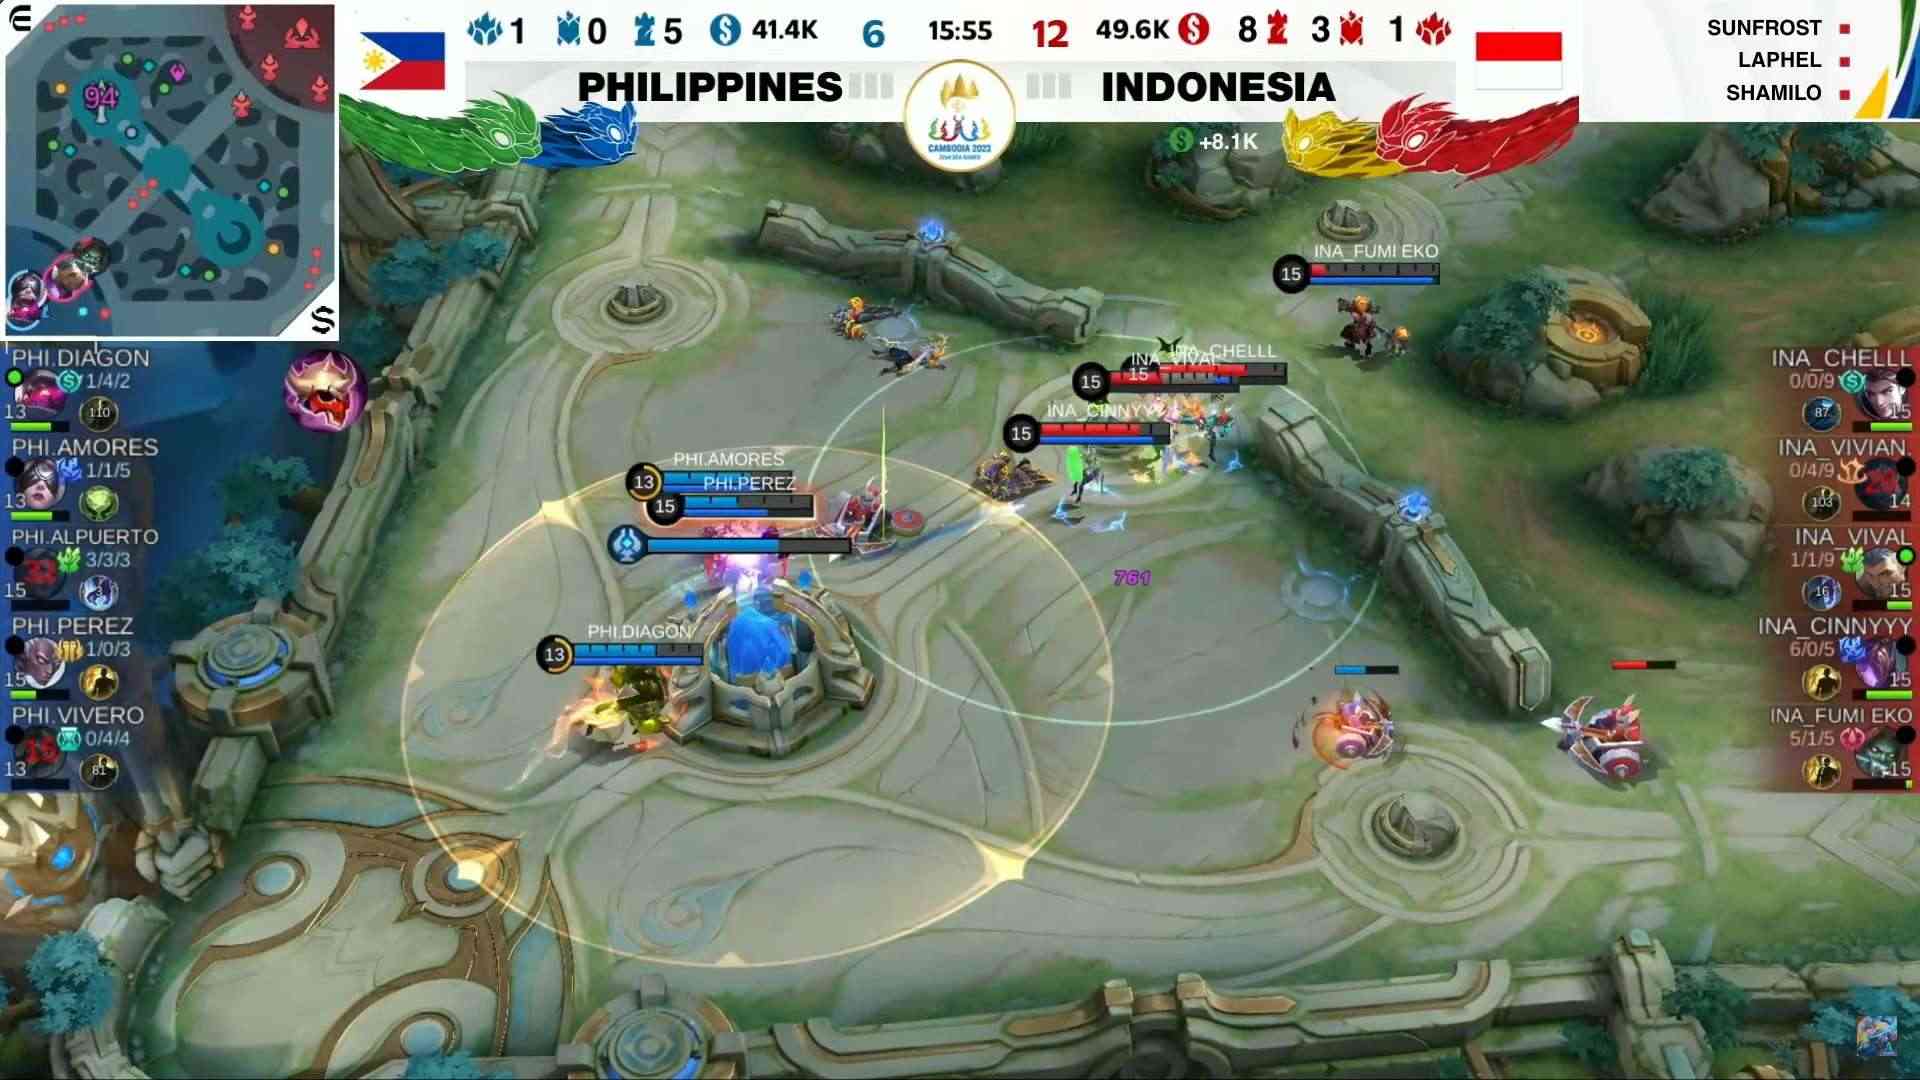 [Trực Tiếp] SEA Games 32 Mobile Legends: Bang Bang team nữ: Indonesia đánh bại Philippines để giành Huy Chương Vàng